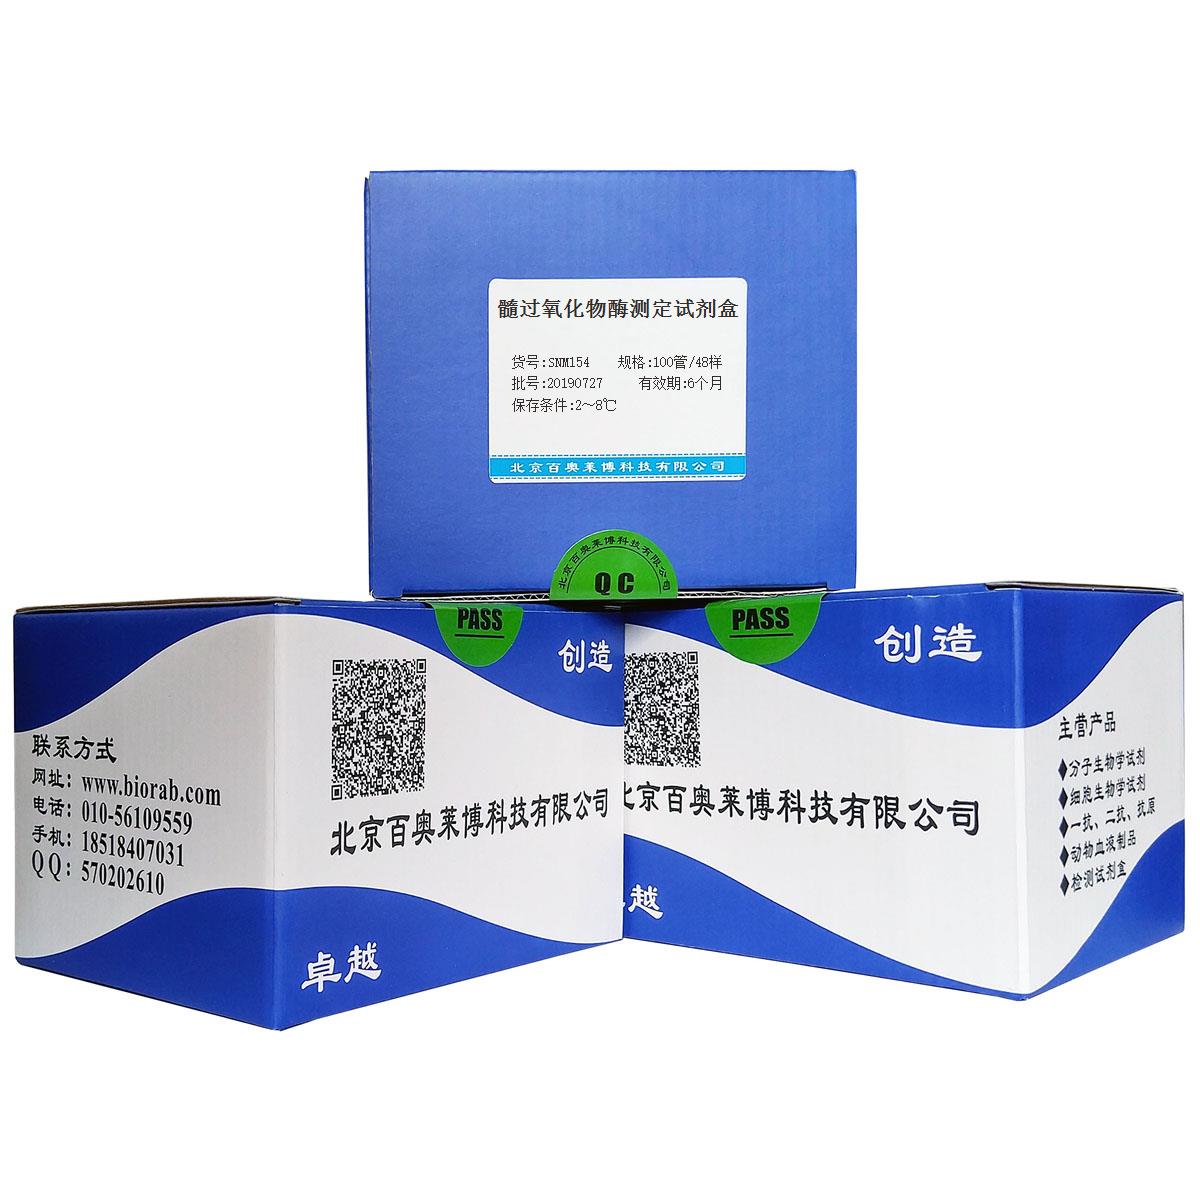 髓过氧化物酶测定试剂盒北京供应商